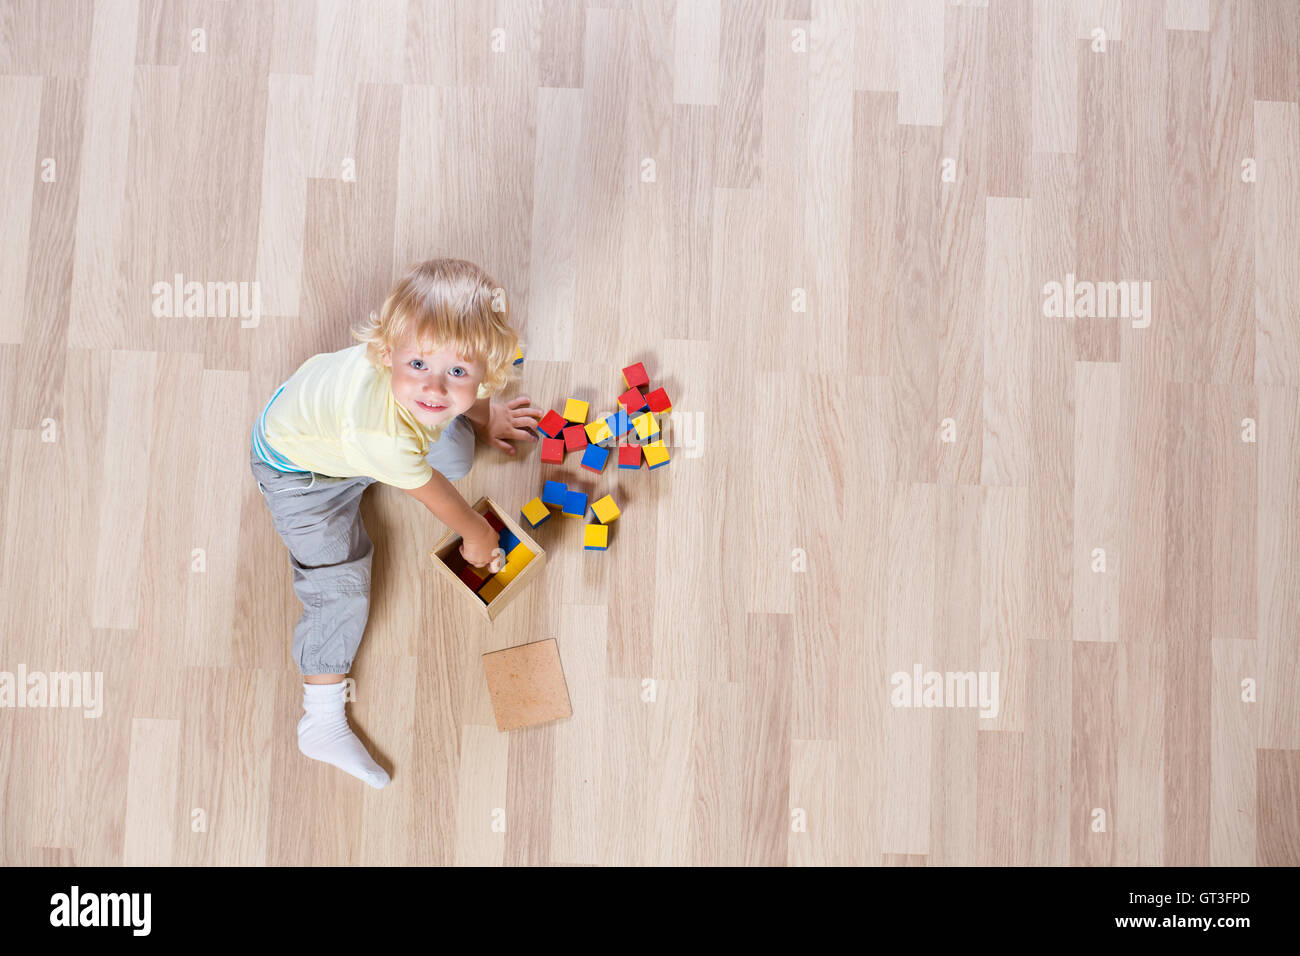 Kind spielt mit bunten Spielzeug Boden Draufsicht Stockfoto